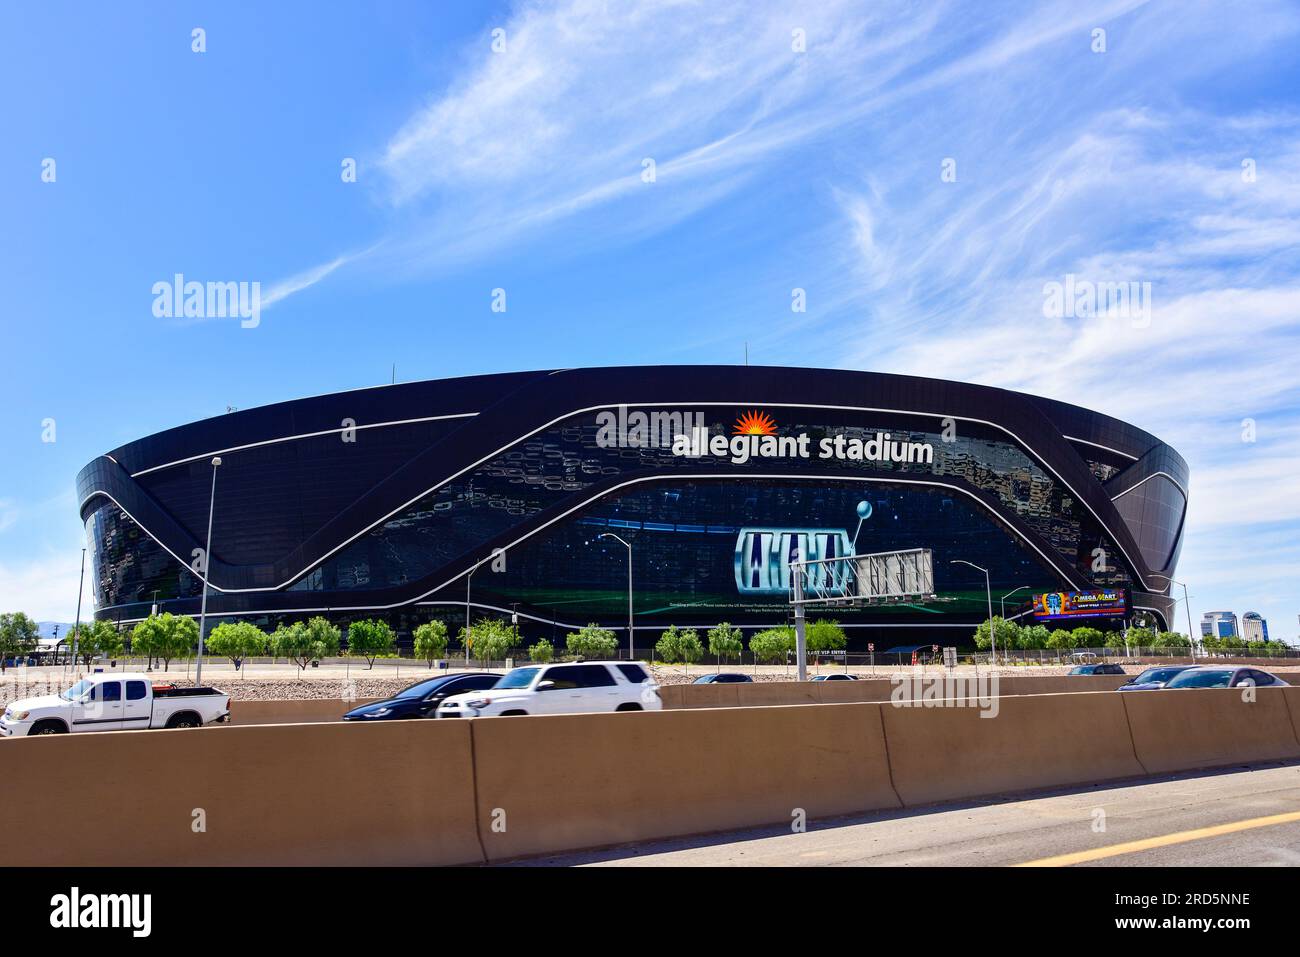 Allegiant Stadium, sede della squadra di football della NFL, i Raiders, Las Vegas, Nevada. Foto Stock